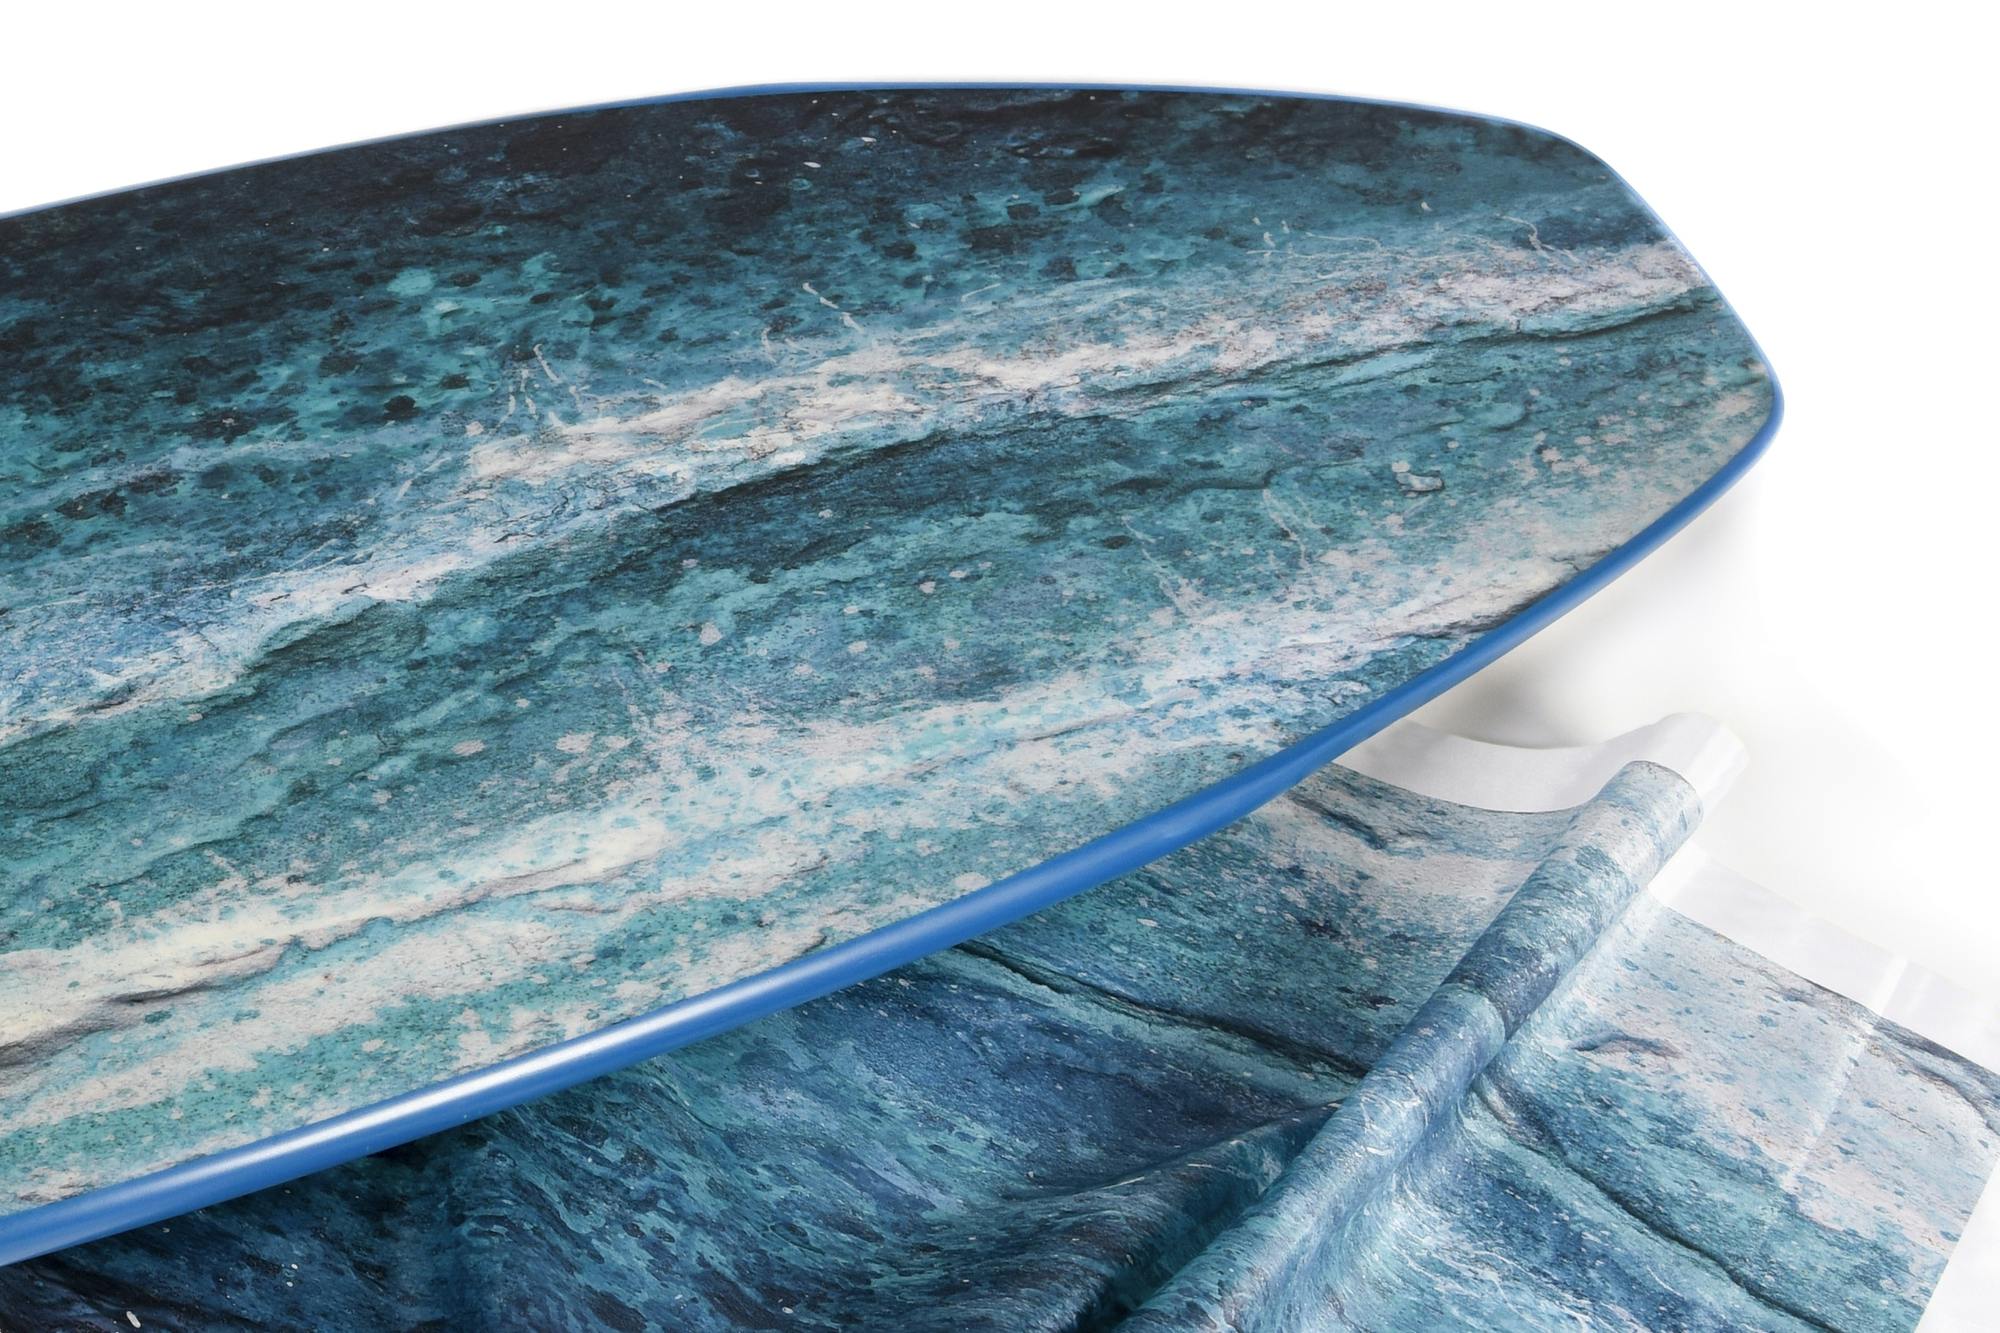 Surfboard Art Overview © swissQprint 